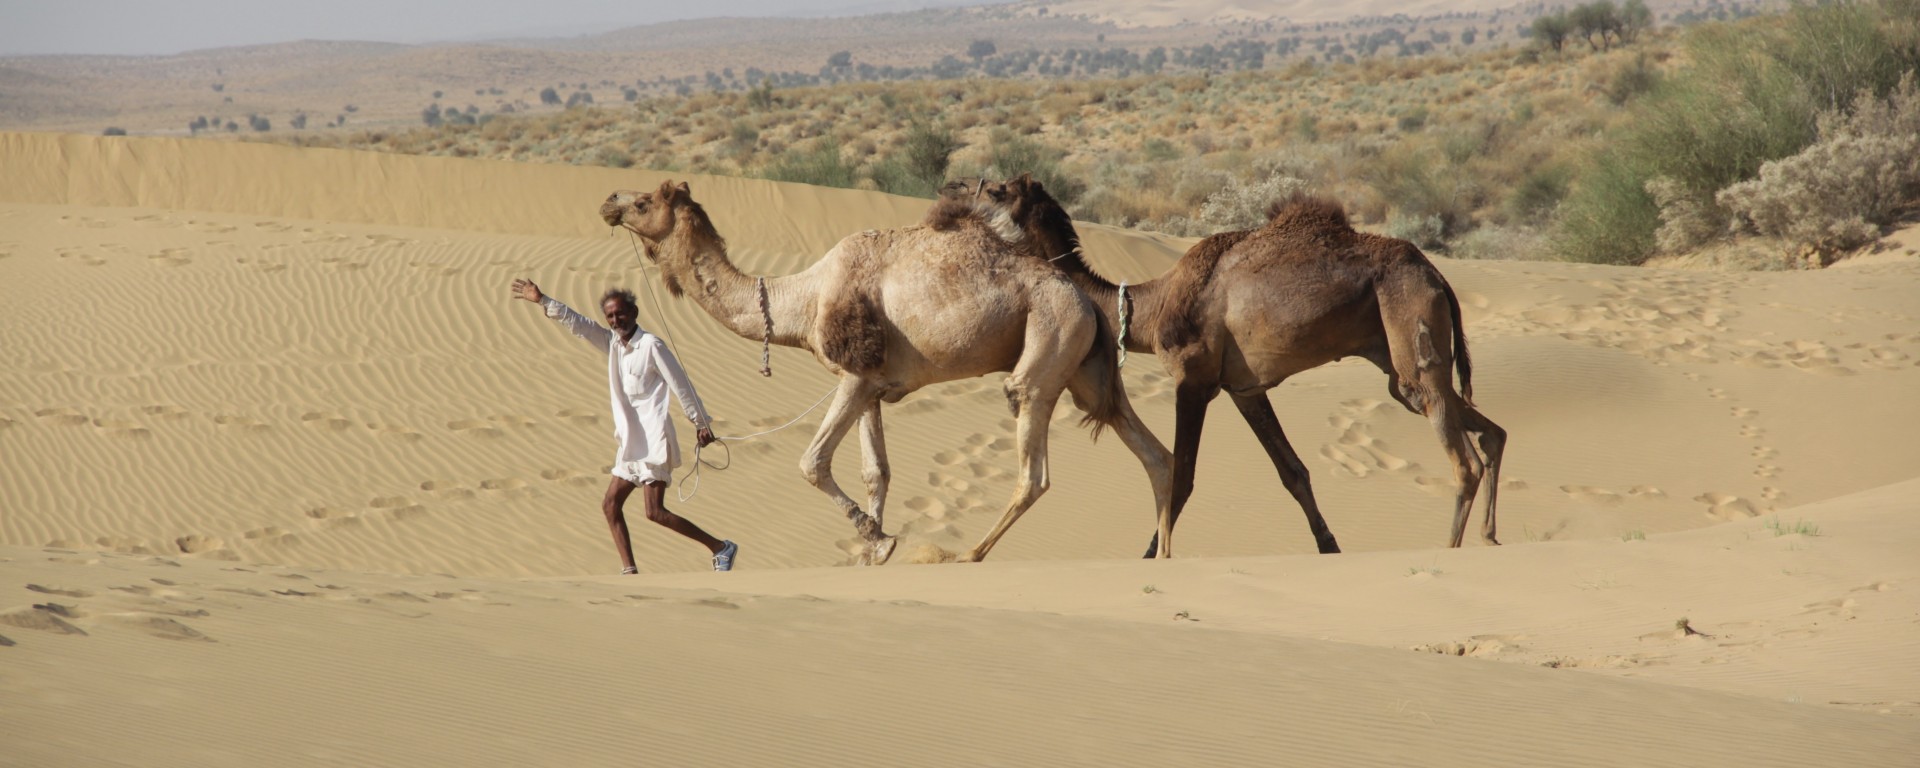 Notre guide Abey parade dans les dunes du désert du Thar avec deux de ses chameaux, Mickaël et Raju (© Jérôme Decoster).